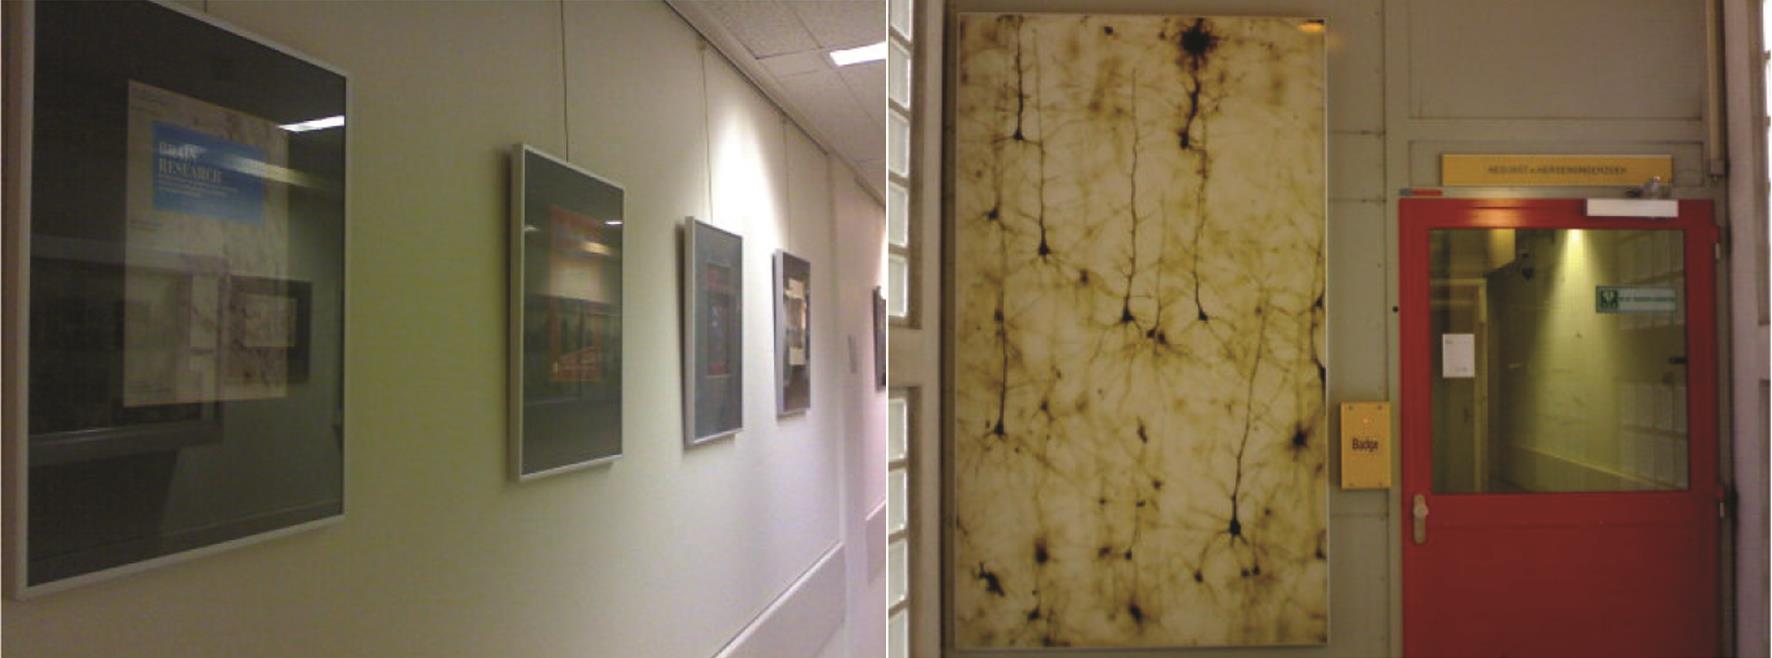 各种学术期刊精美的杂志封面，用玻璃框裱在墙上，学术和艺术氛围很浓（左）；进入研究所前，每天都能看到的大幅神经元染色照片（右）。